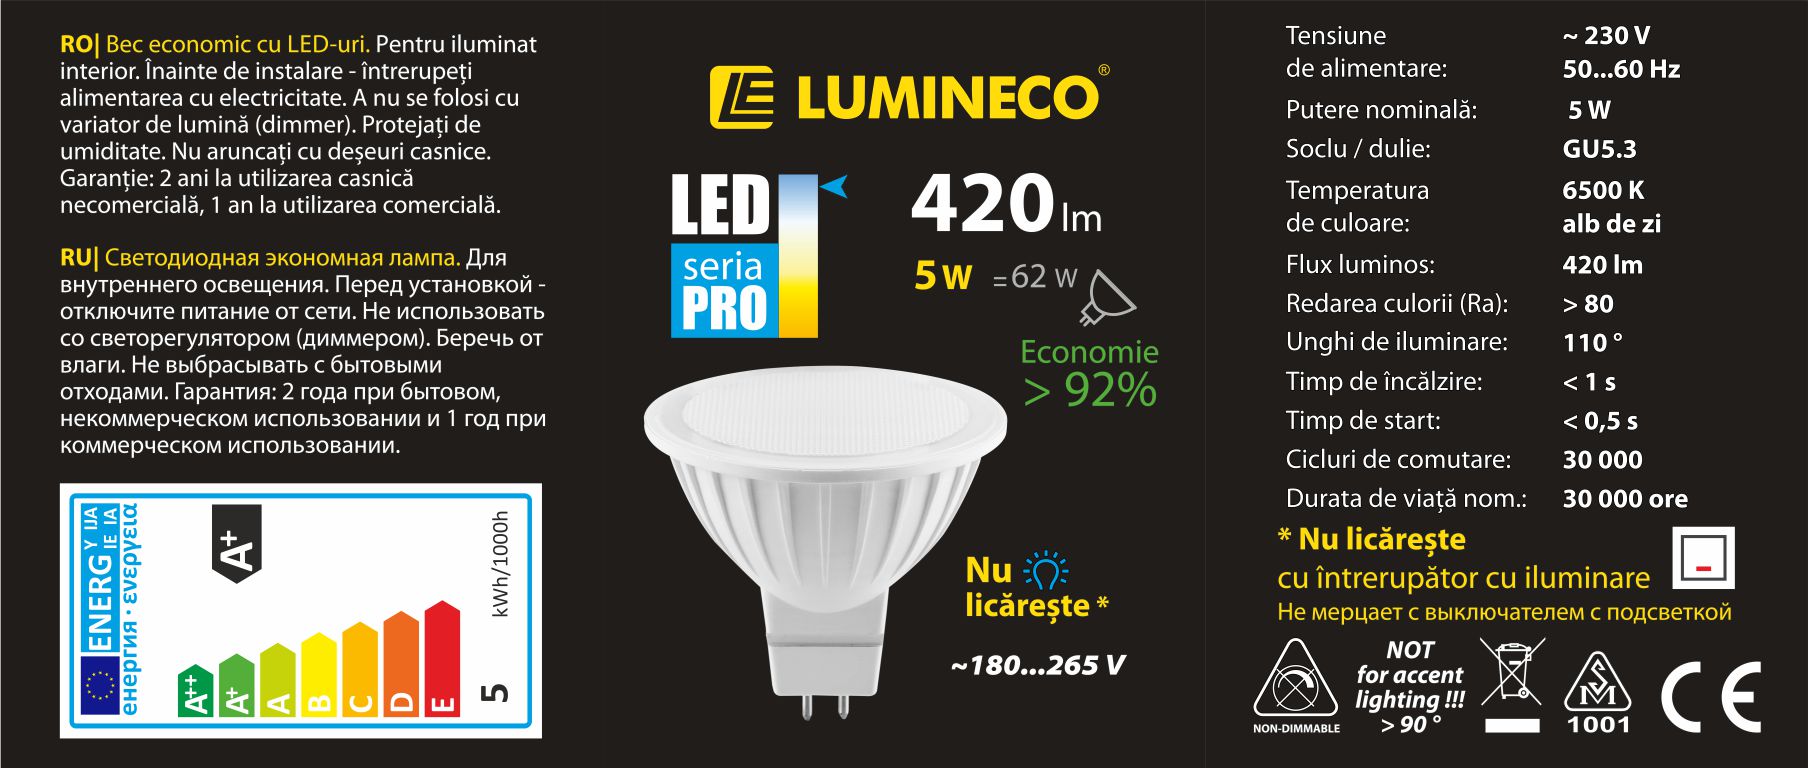 10107006, Lampa LED PRO MR16 5W GU5.3 6500K,
Светодиодная лампа LED PRO MR16 5W GU5.3 6500K
Мощность (Вт) 5
Эквивал. традиц. (Вт) 62
Напряжение (В) 230V AC
Цветовая температура (K) 6500K
Цвет свечения белый дневной
Световой поток (Лм) 420
Индекс цветопередачи (Ra) 80
Угол рассеивания(°) 110
Цоколь GU5.3
Материал корпуса PC+ALU
Цвет корпуса белый
Время разогрева (с) 1
Время запуска (с) 0.5
Кол-во циклов вкл./ выкл. 30000
Световой поток после 6000 ч (%) 80
Срок службы (ч) 30000
Длина (мм) 48
Диаметр (мм) 50
Совместимость со светорегулятором Нет
Гарантия (мес.) * при бытовом некоммерческом использовании	24